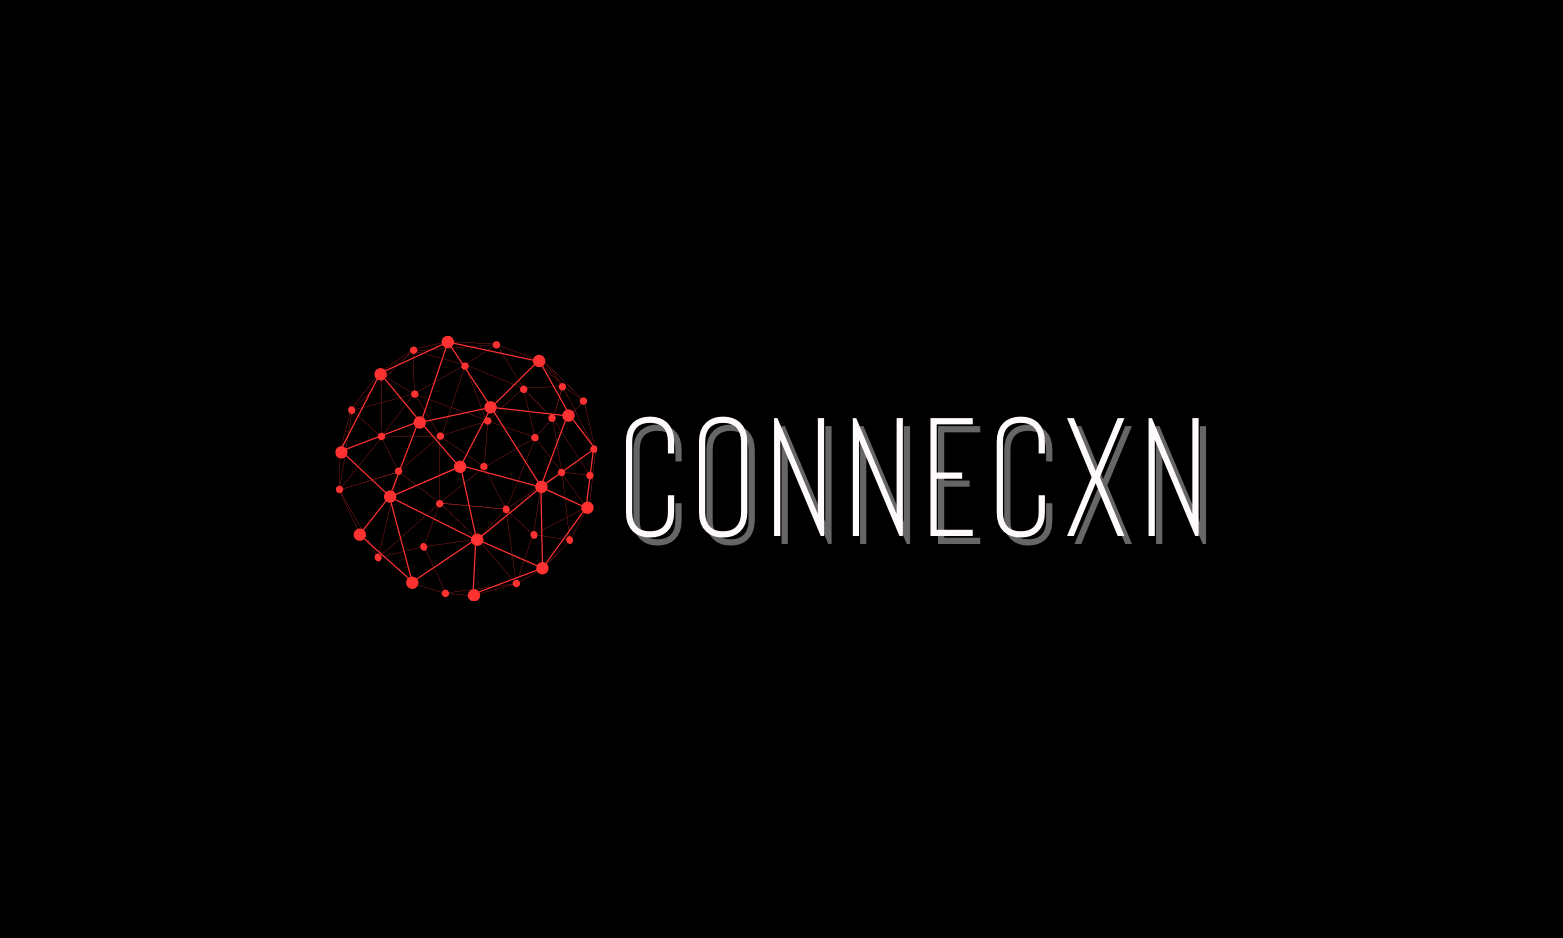 CONNECXN.COM